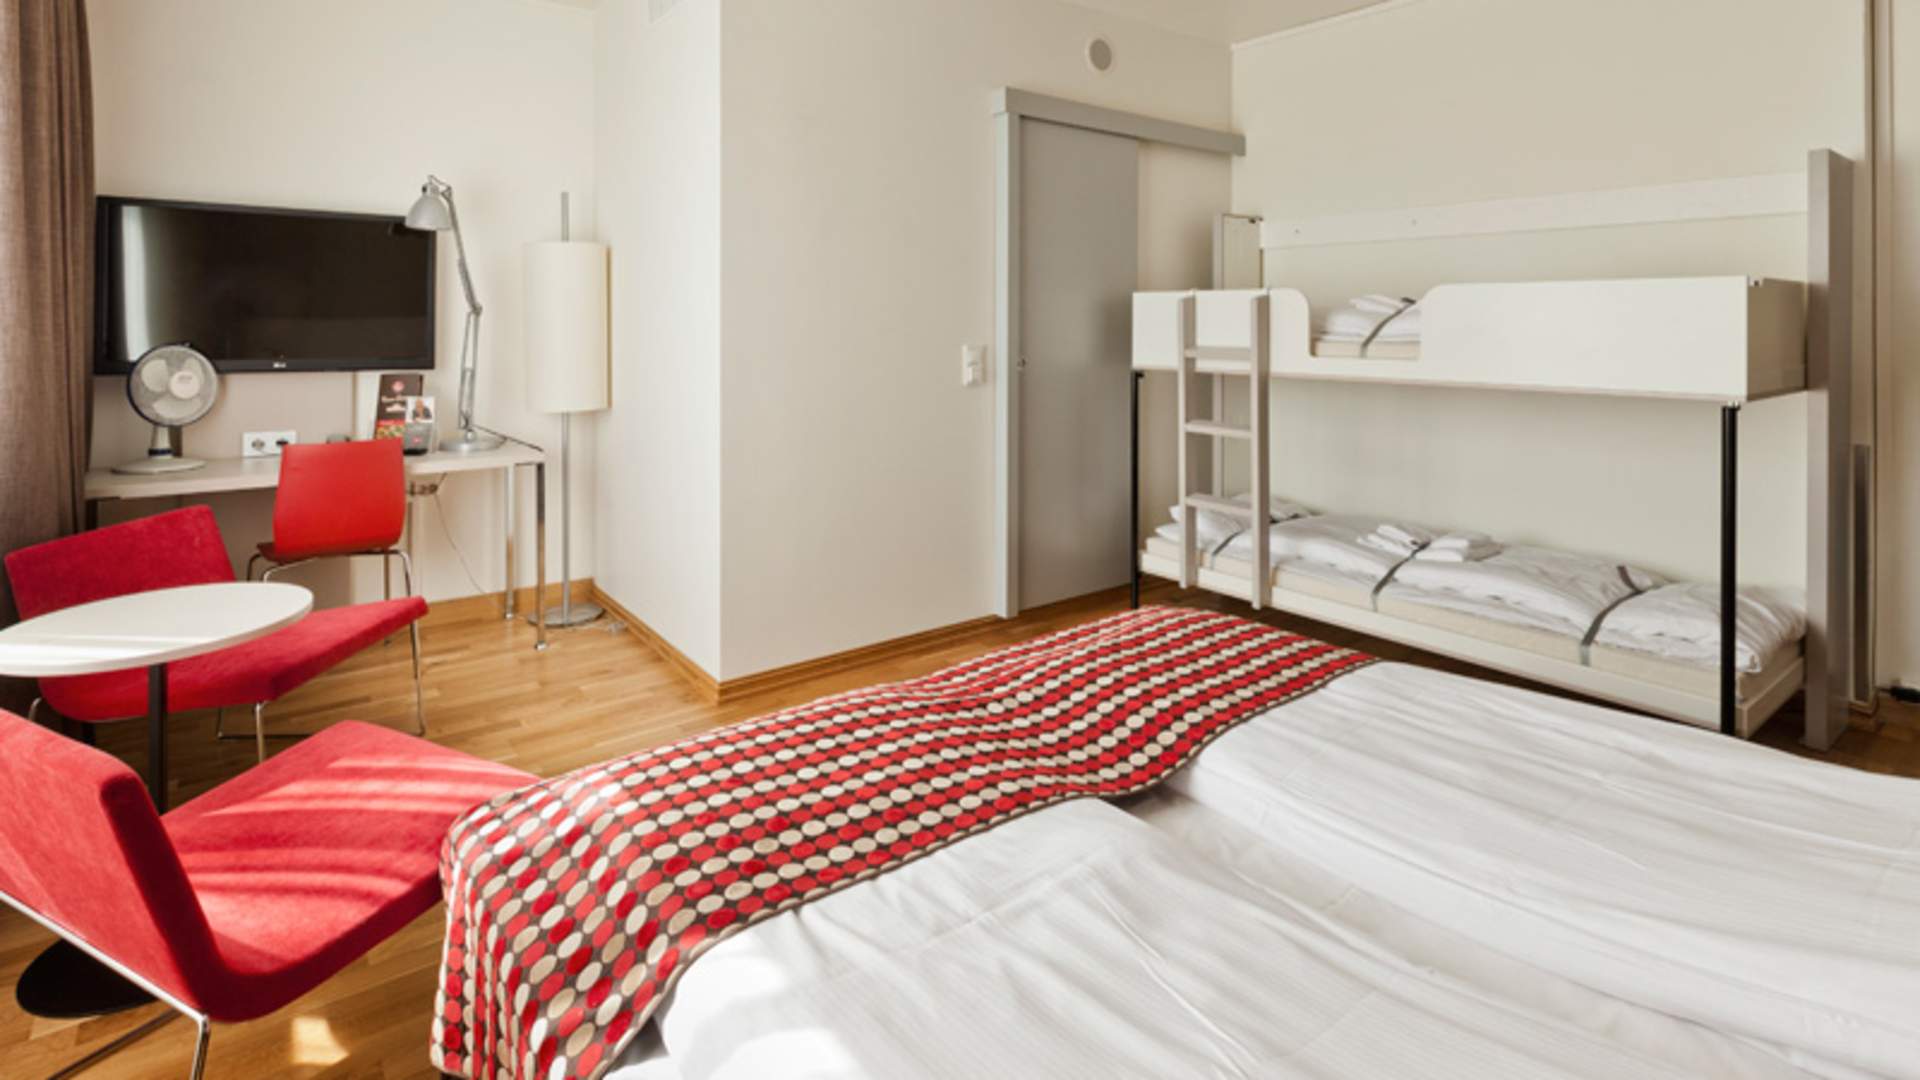 Thon Hotel Munch, Oslo – Preços atualizados 2023